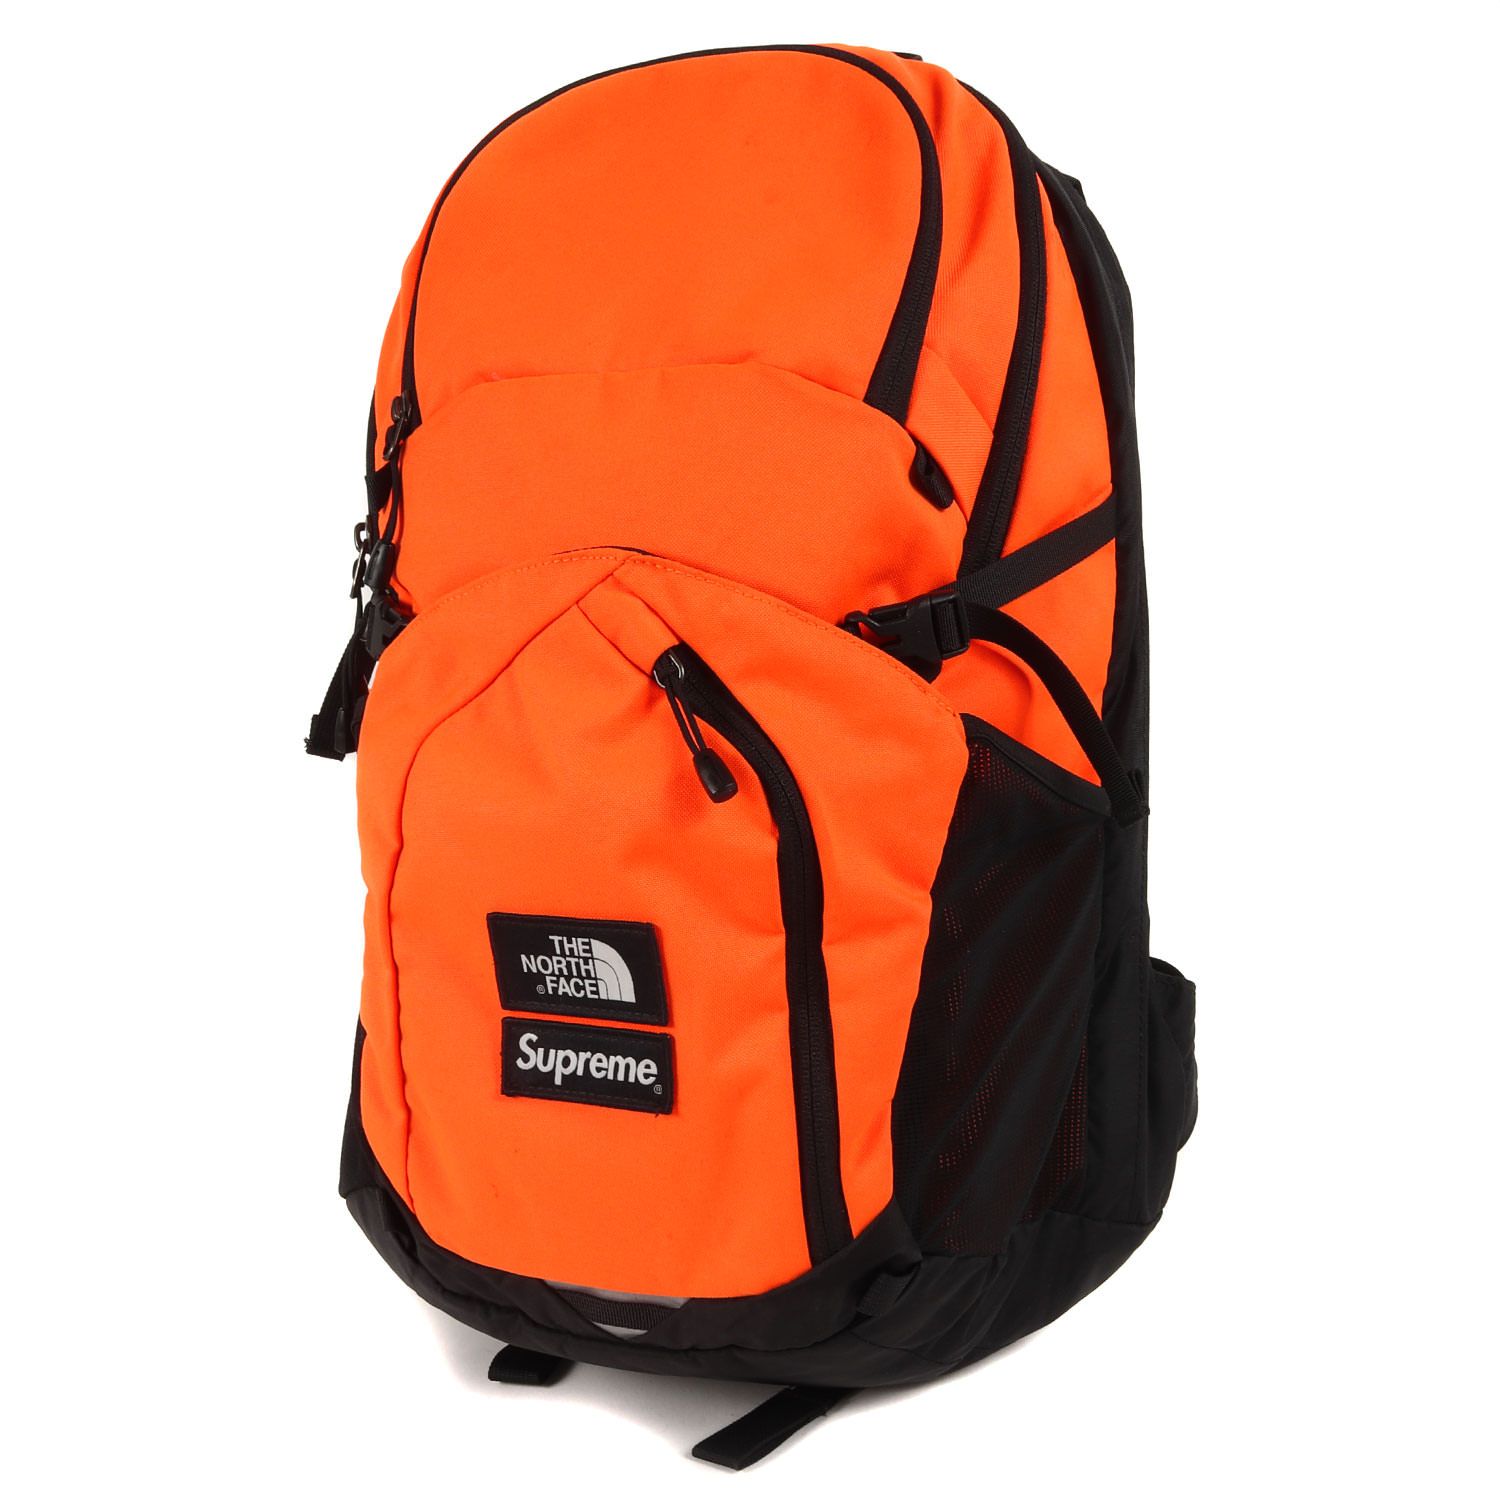 Supreme シュプリーム THE NORTH FACE ノースフェイス ポコノ バックパック Pocono Backpack 16AW オレンジ  カバン リュック ブランド コラボシリーズ